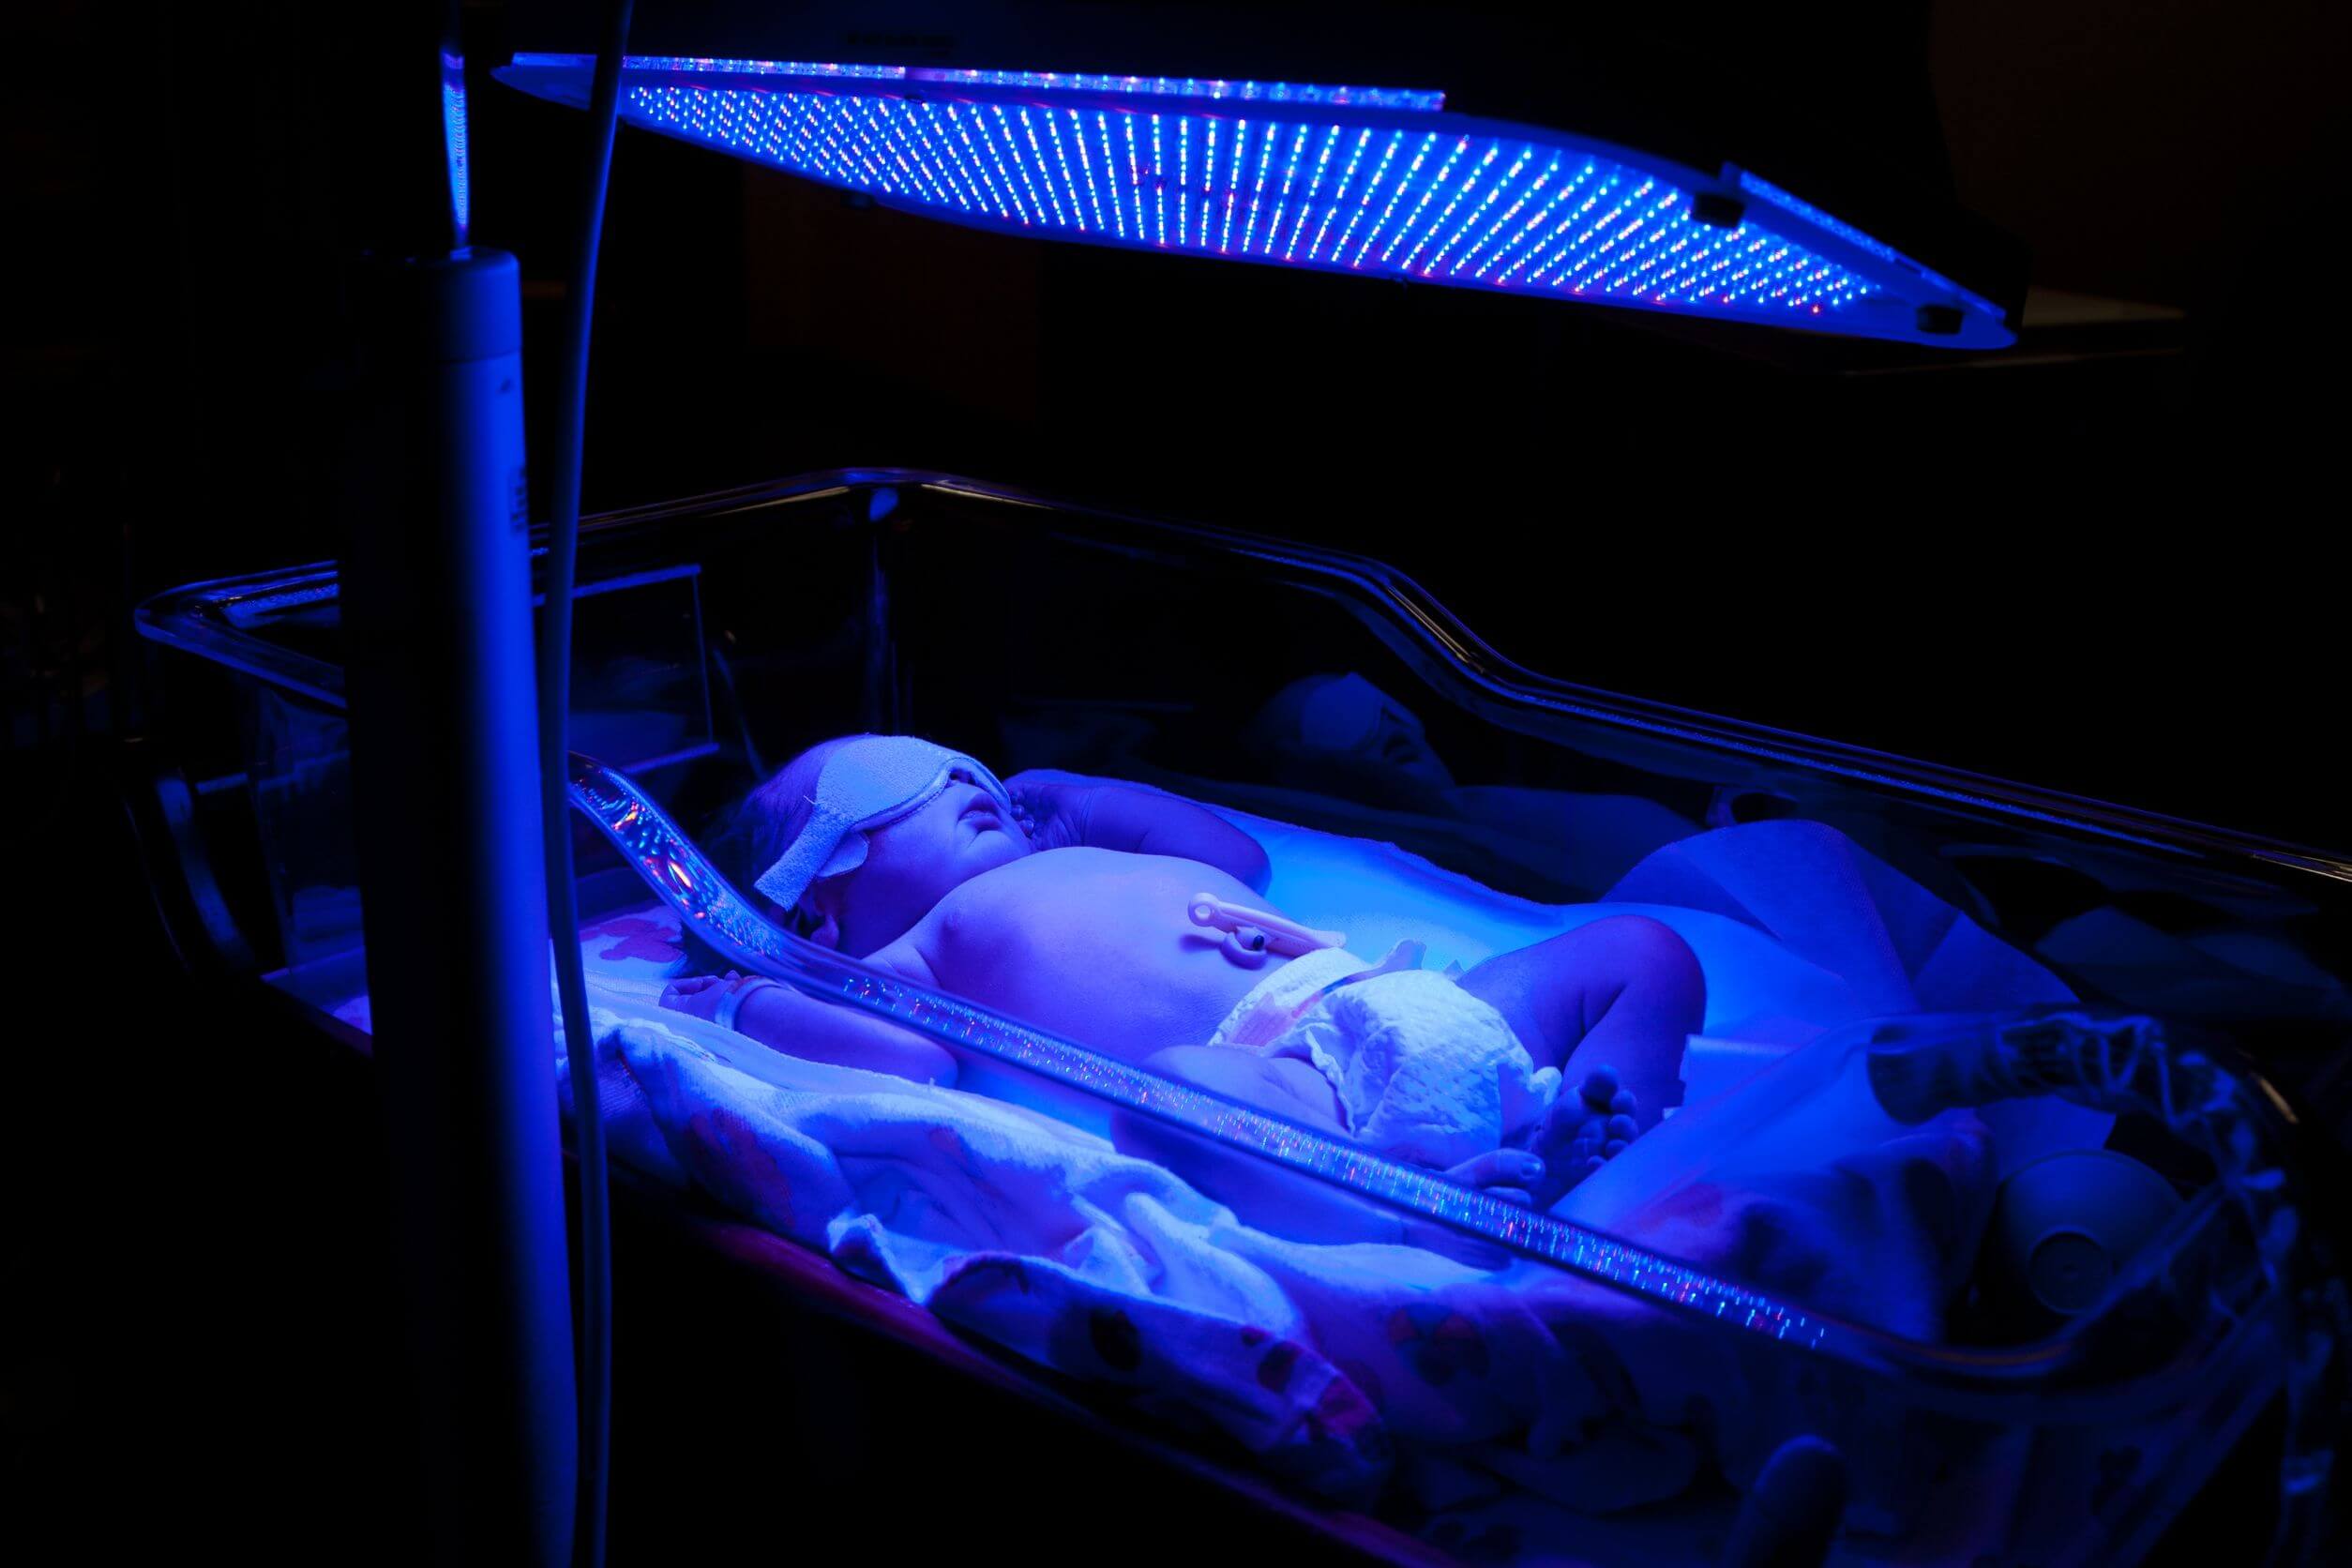 A newborn baby under a blue light.